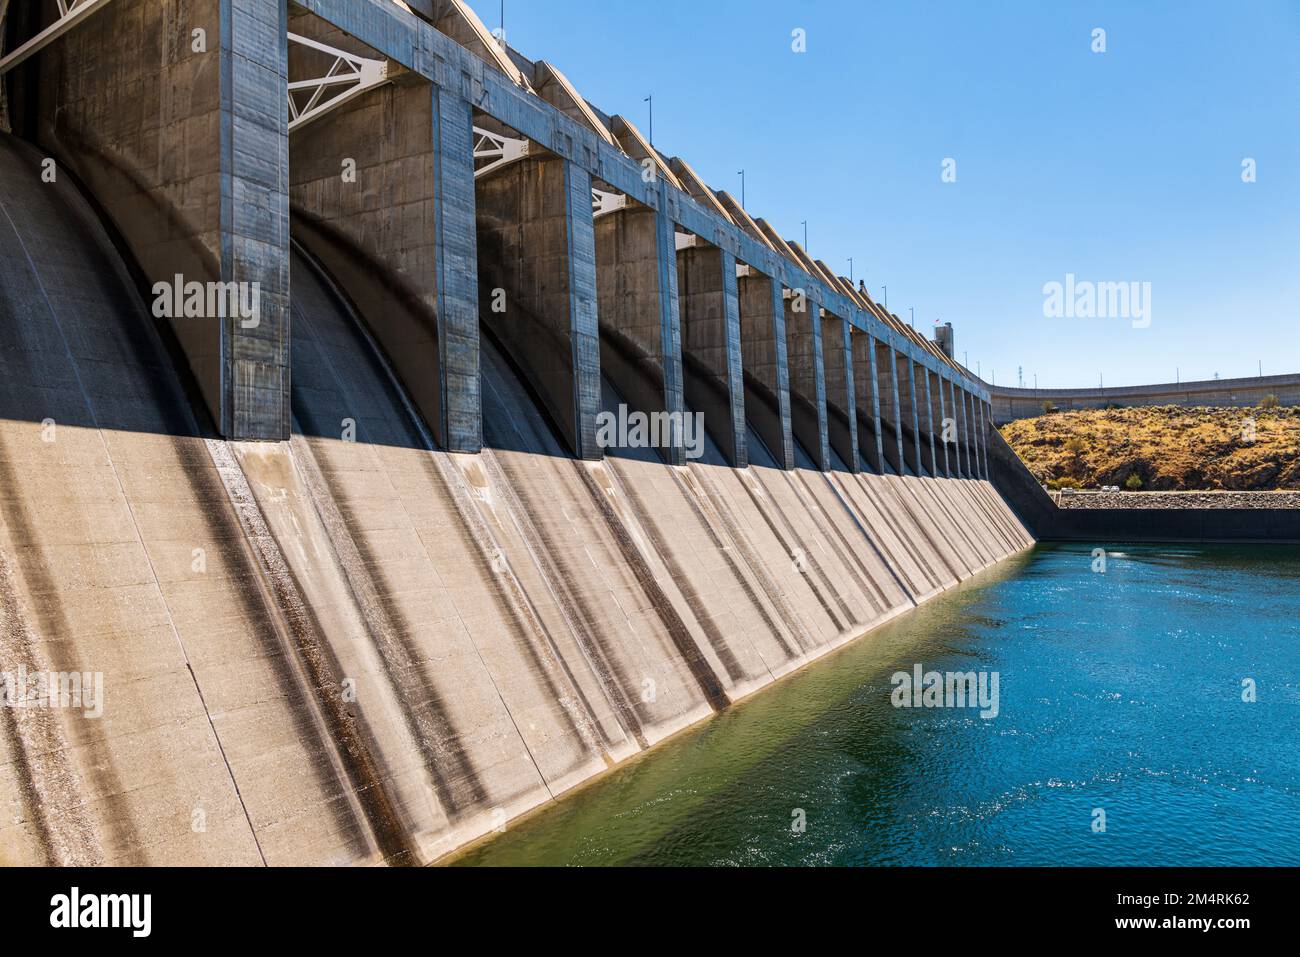 Diga del Capo Joseph; secondo produttore più grande di potere negli Stati Uniti; diga idroelettrica sul fiume di Columbia; stato di Washington; Stati Uniti Foto Stock